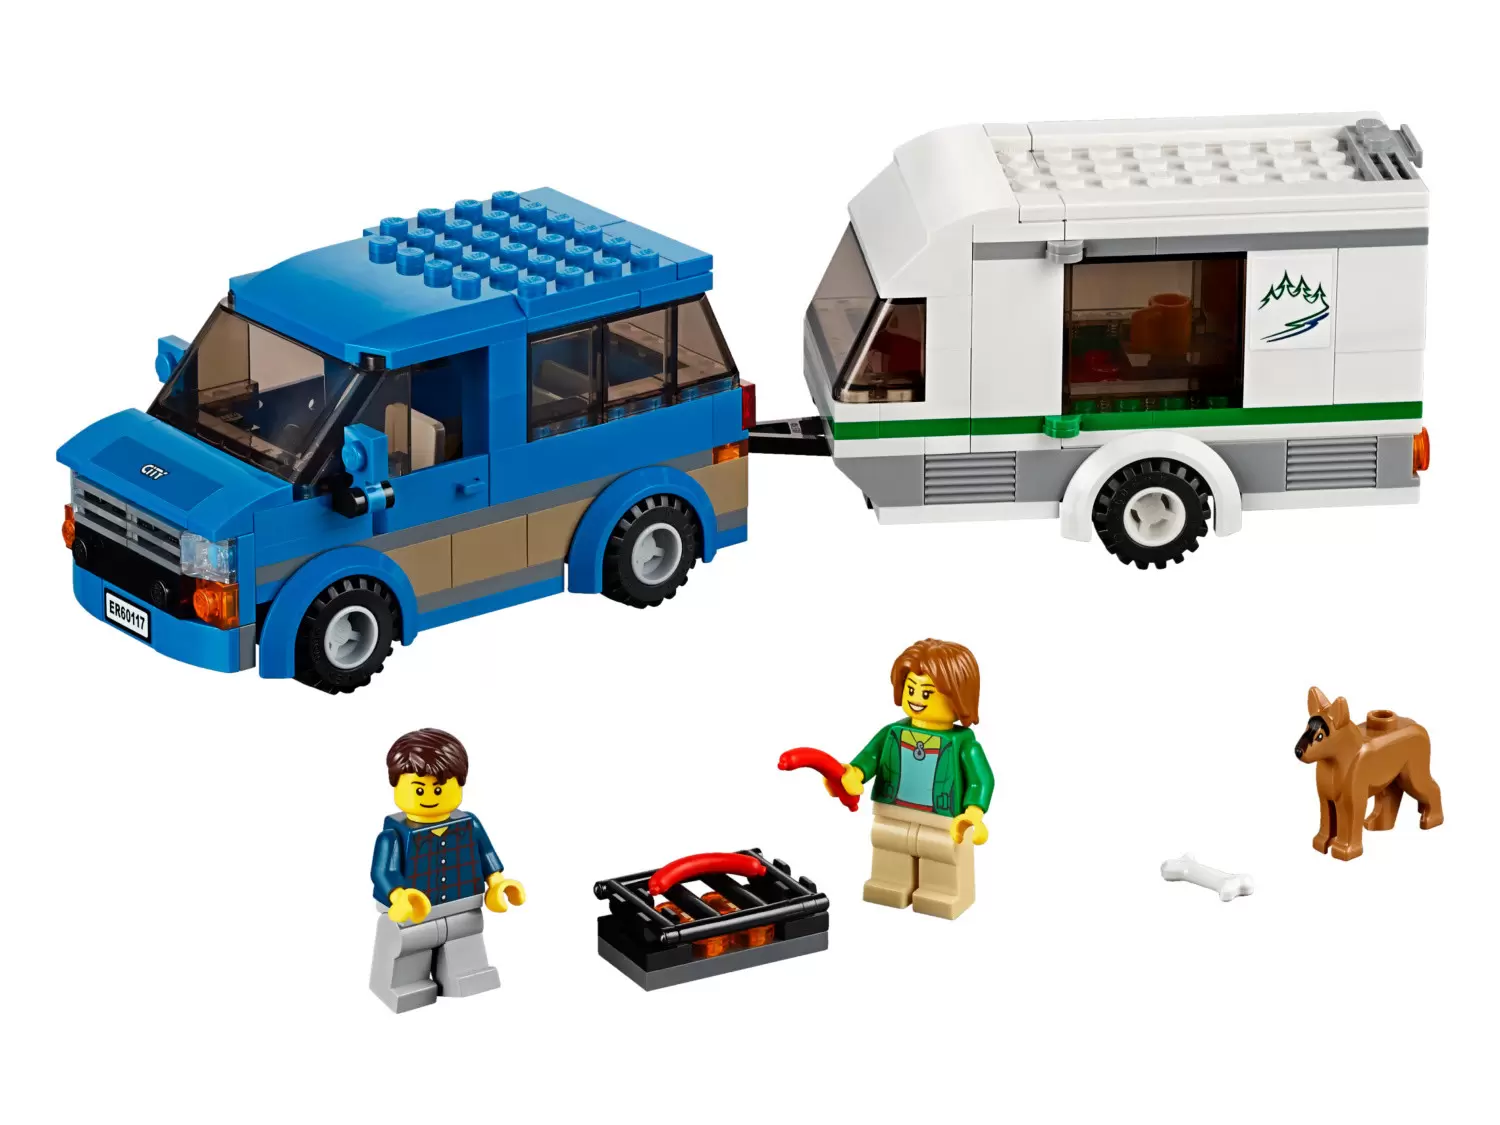 LEGO CITY - Van & Caravan